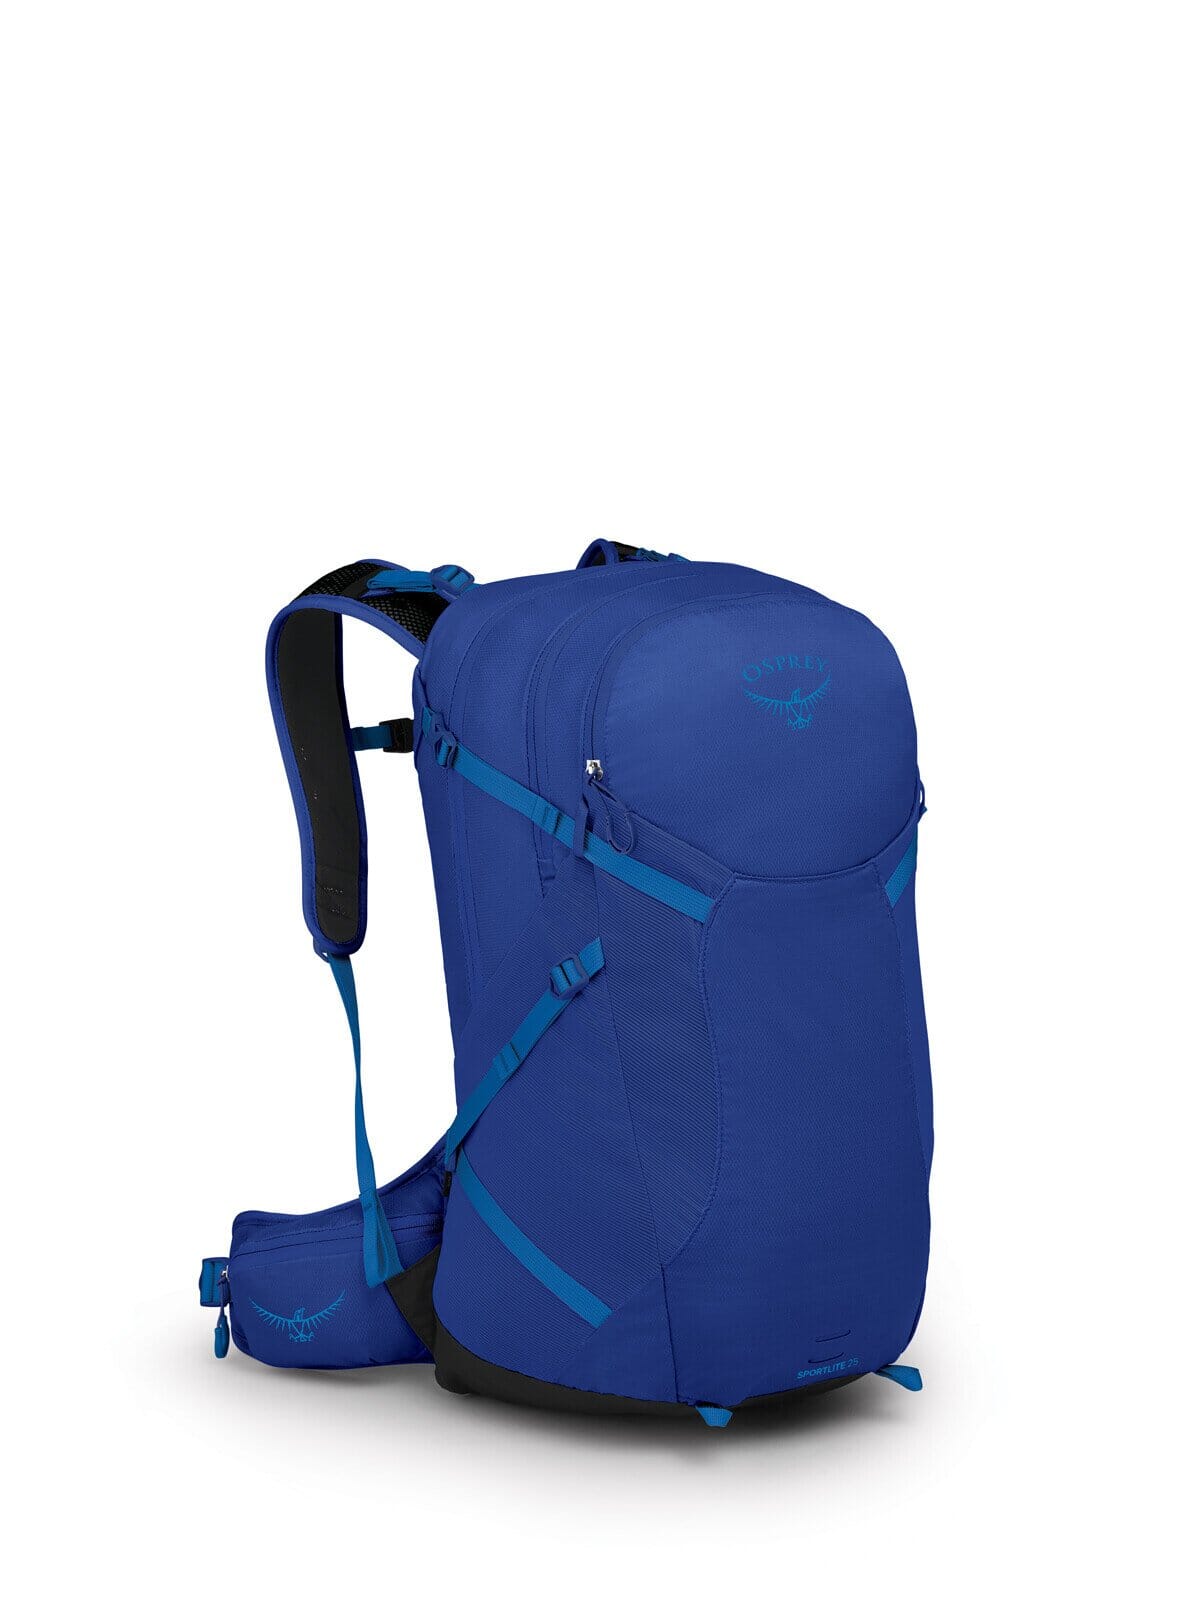 Osprey Sportlite 25 Backpack BLUE SKY M/L 